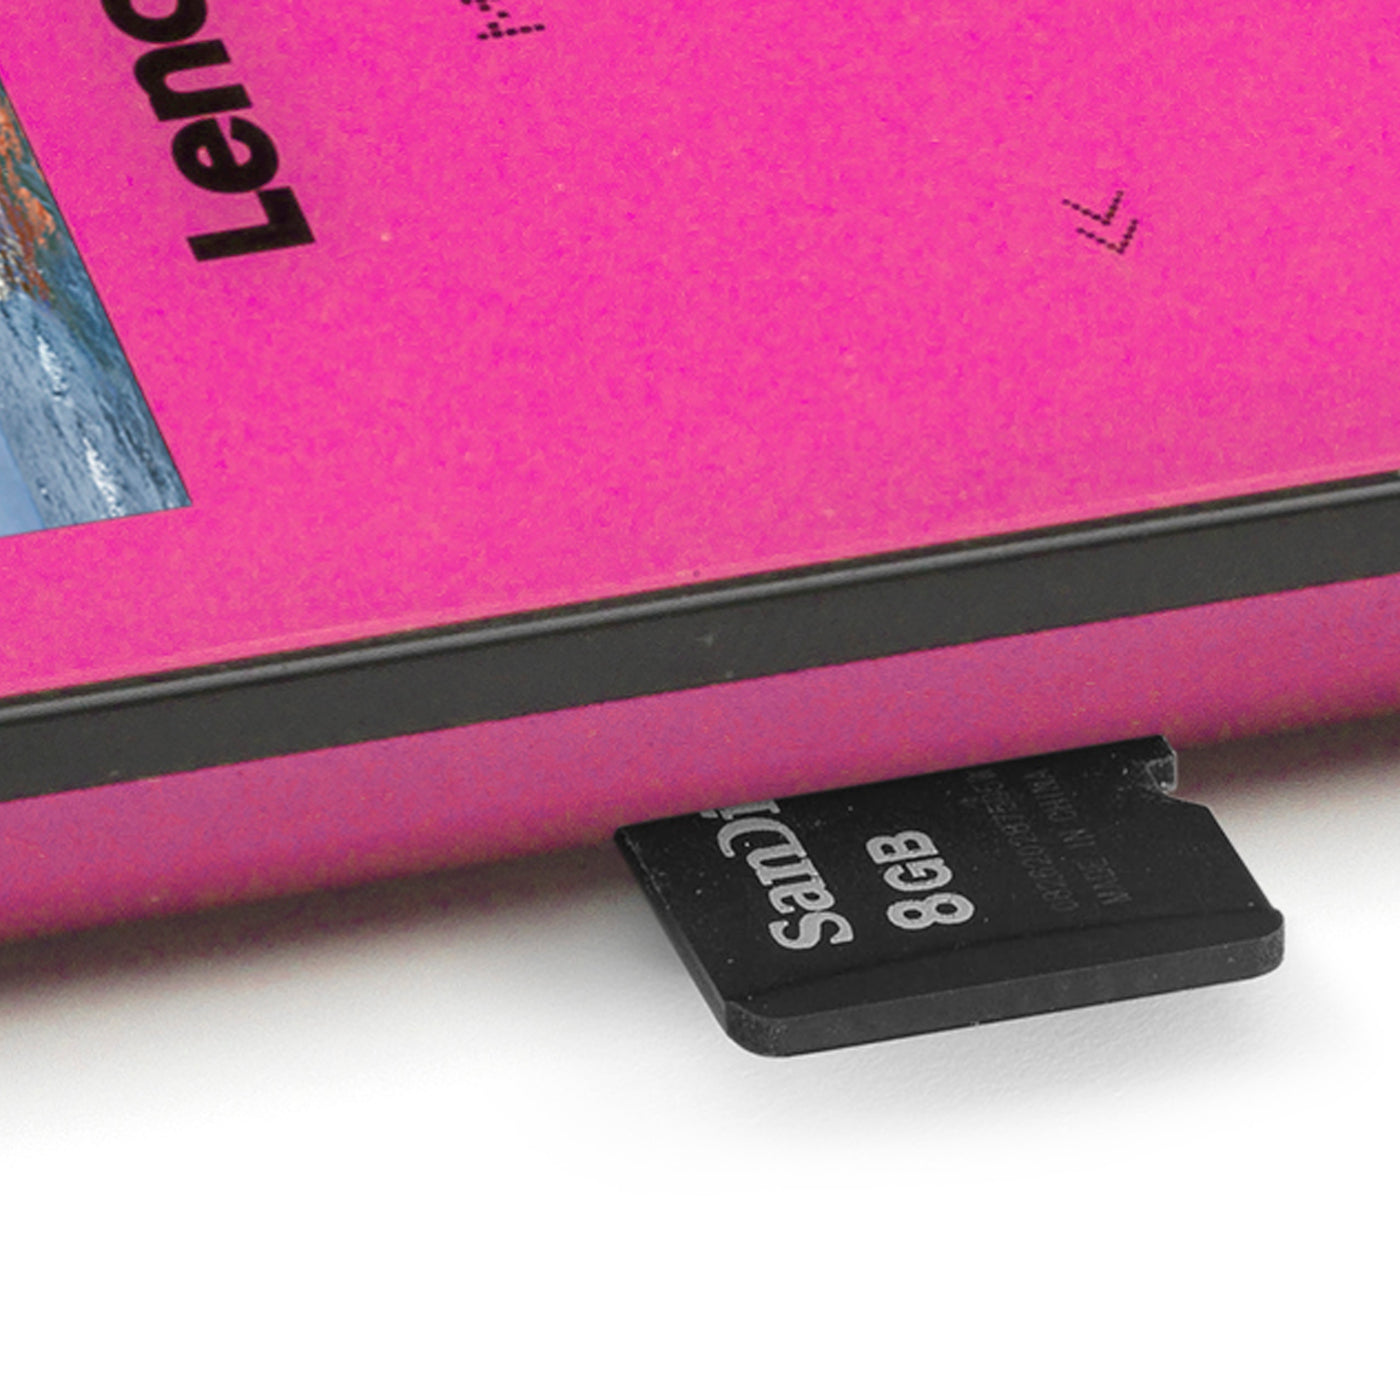 LENCO Xemio-655 Różowy - Odtwarzacz MP3/MP4 z pamięcią 4GB - Różowy